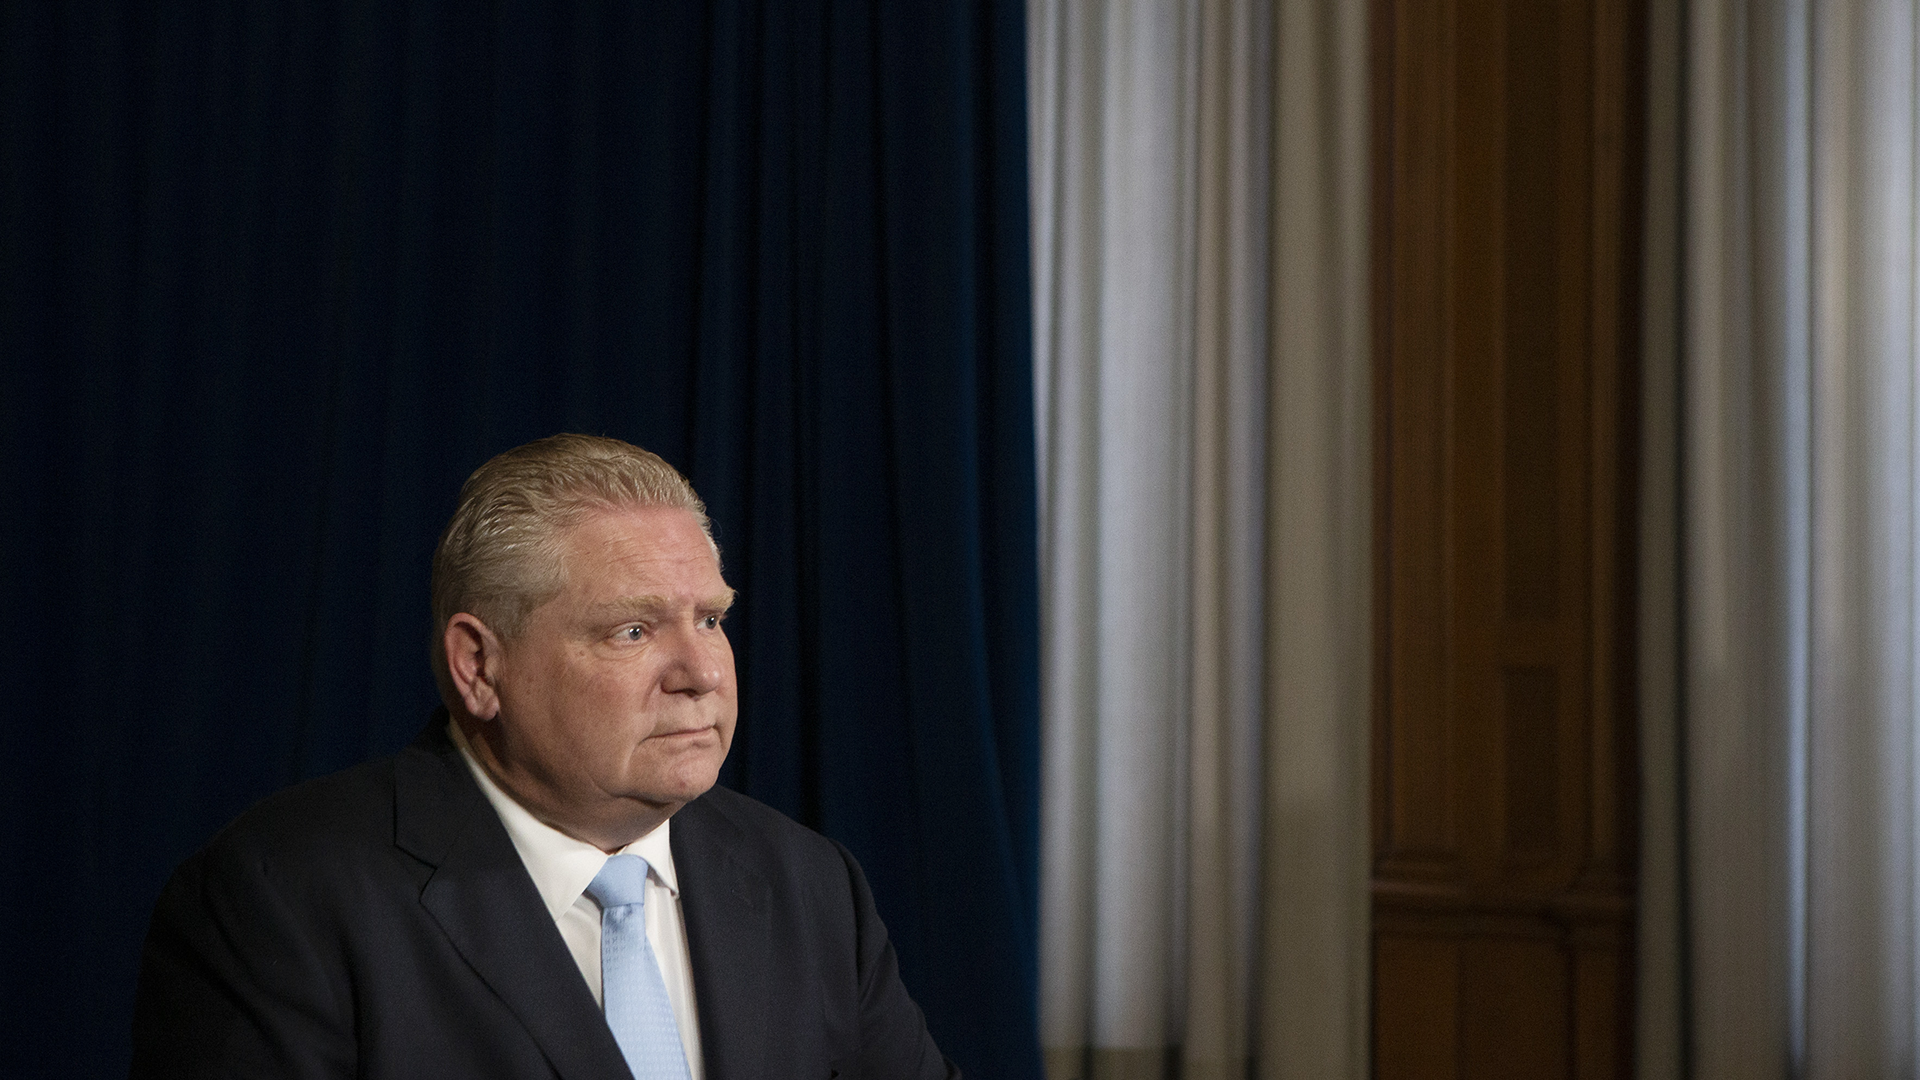 Le premier ministre de l'Ontario, Doug Ford.